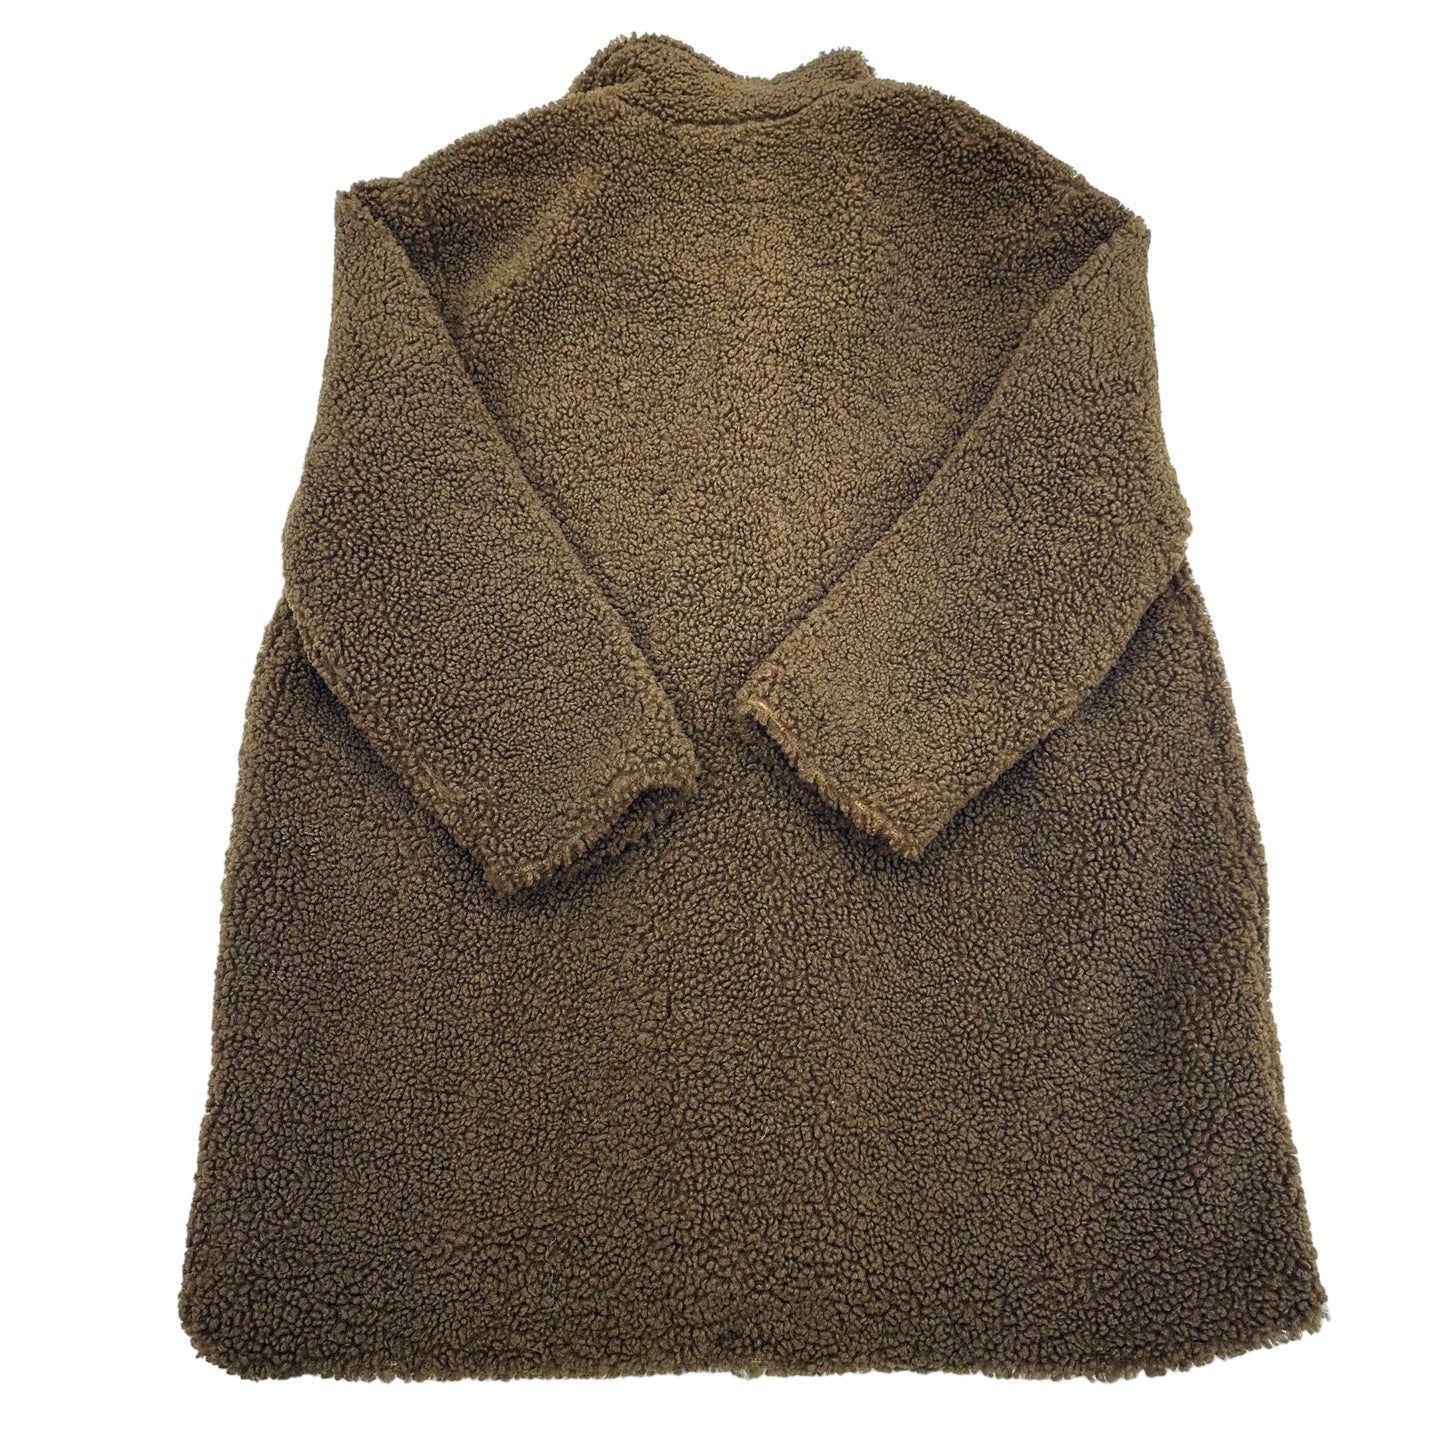 Coat Faux Fur & Sherpa By Ava & Viv  Size: 2x